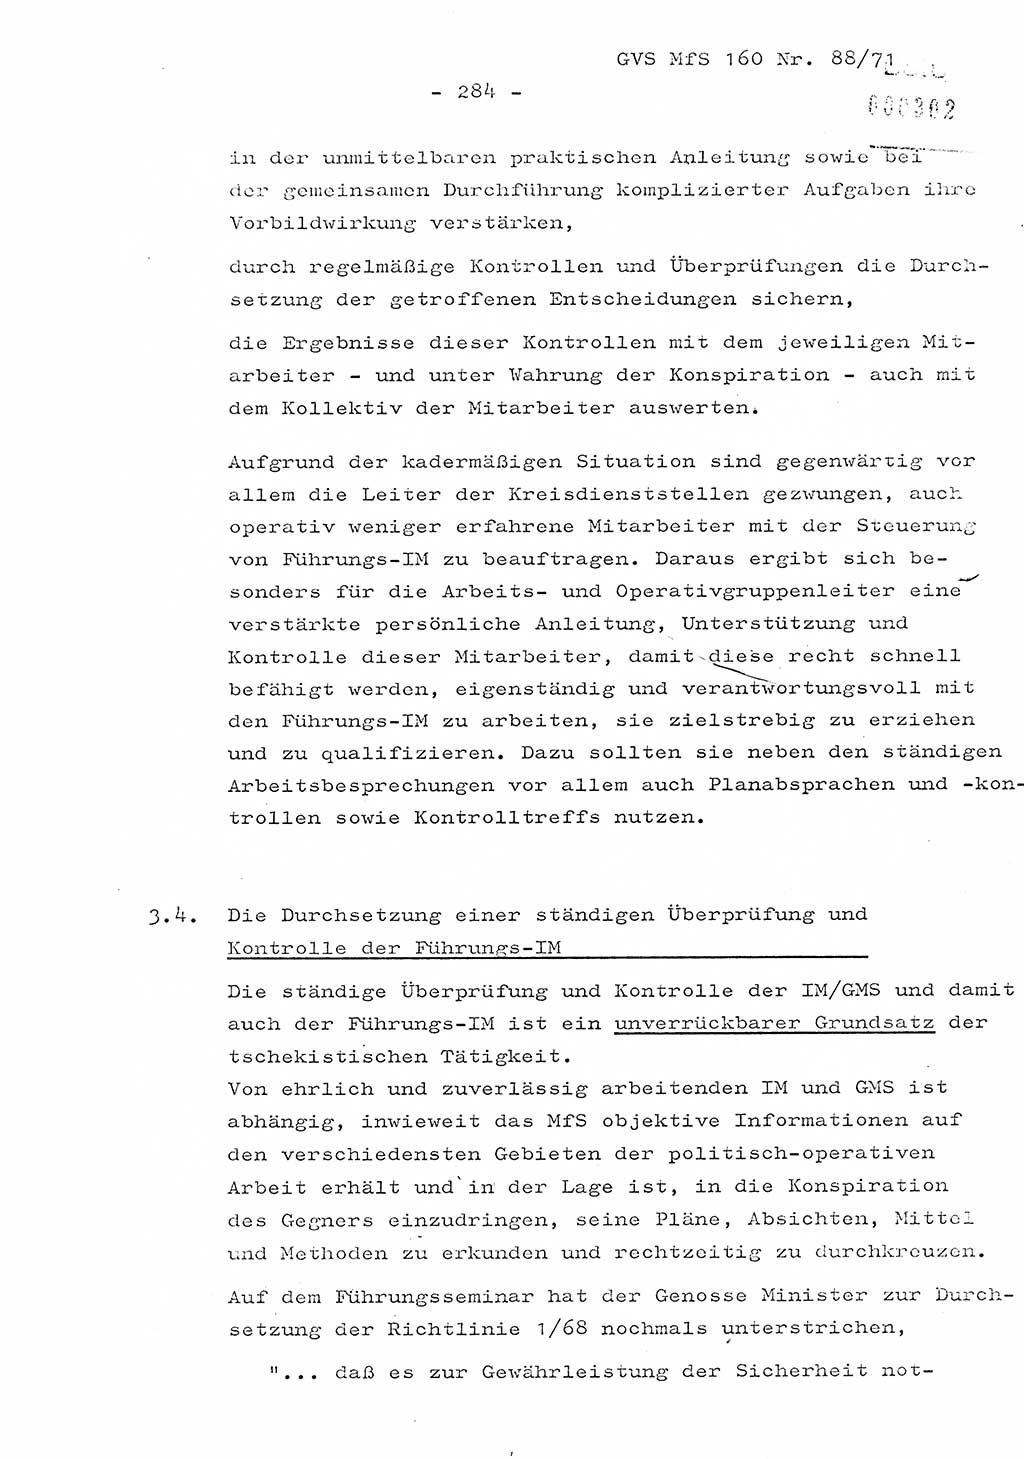 Dissertation Oberstleutnant Josef Schwarz (BV Schwerin), Major Fritz Amm (JHS), Hauptmann Peter Gräßler (JHS), Ministerium für Staatssicherheit (MfS) [Deutsche Demokratische Republik (DDR)], Juristische Hochschule (JHS), Geheime Verschlußsache (GVS) 160-88/71, Potsdam 1972, Seite 284 (Diss. MfS DDR JHS GVS 160-88/71 1972, S. 284)